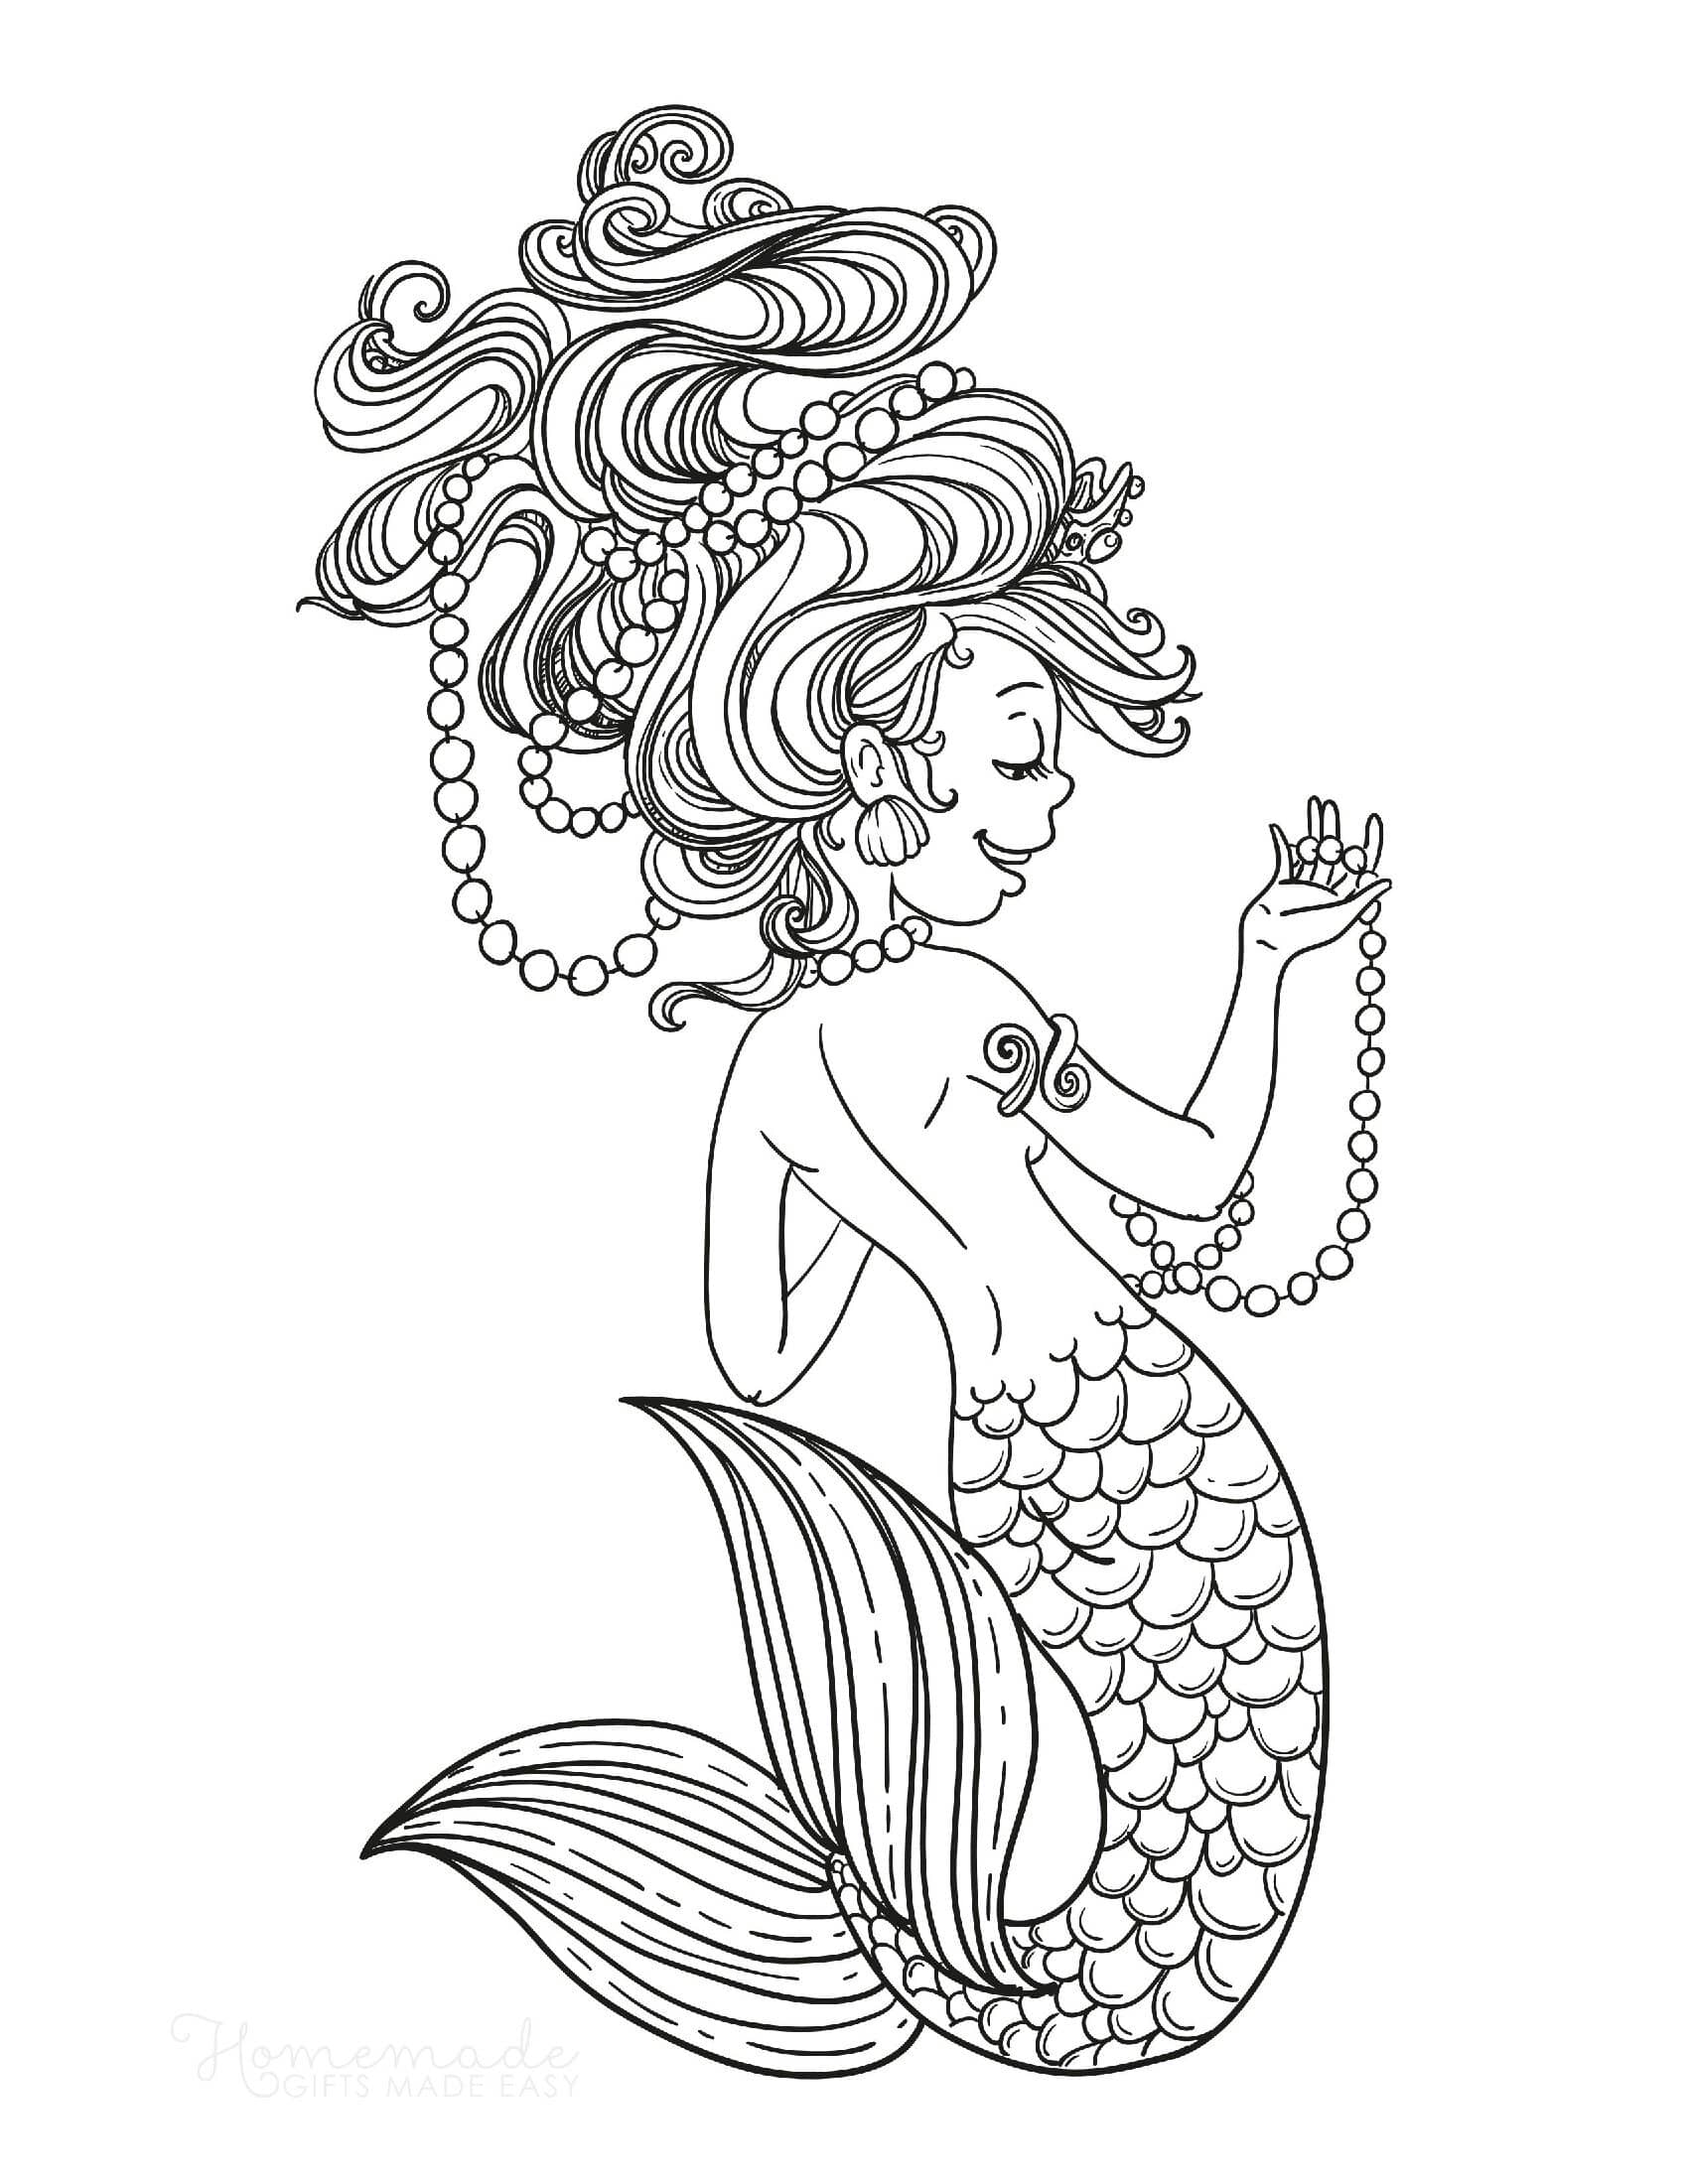 Mermaid strings pearls  wild hair Coloring Pages